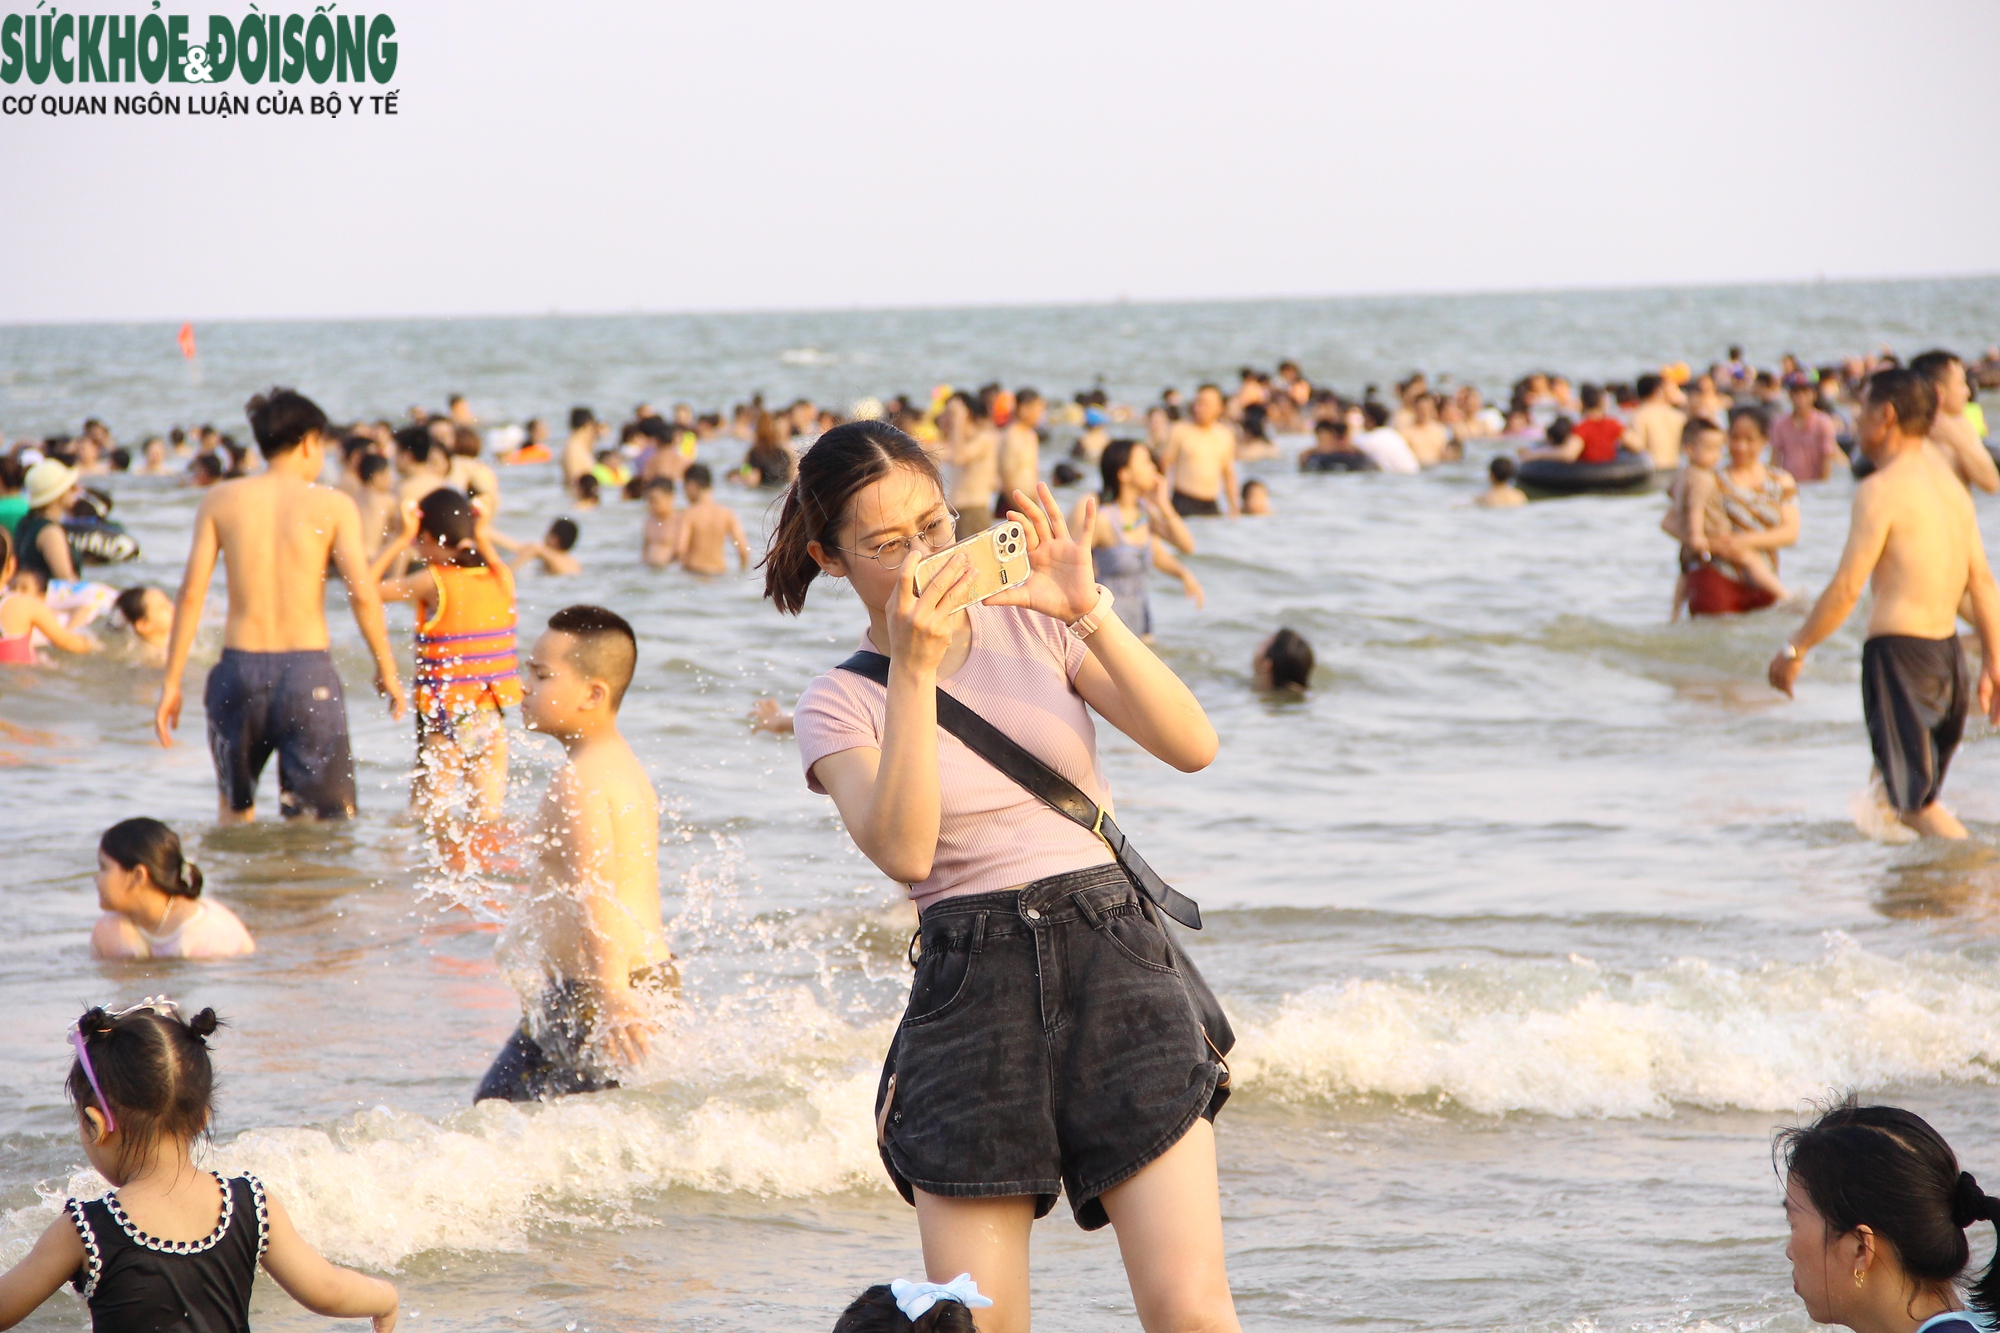 Bãi biển Sầm Sơn chật kín người dịp cuối tuần - Ảnh 9.